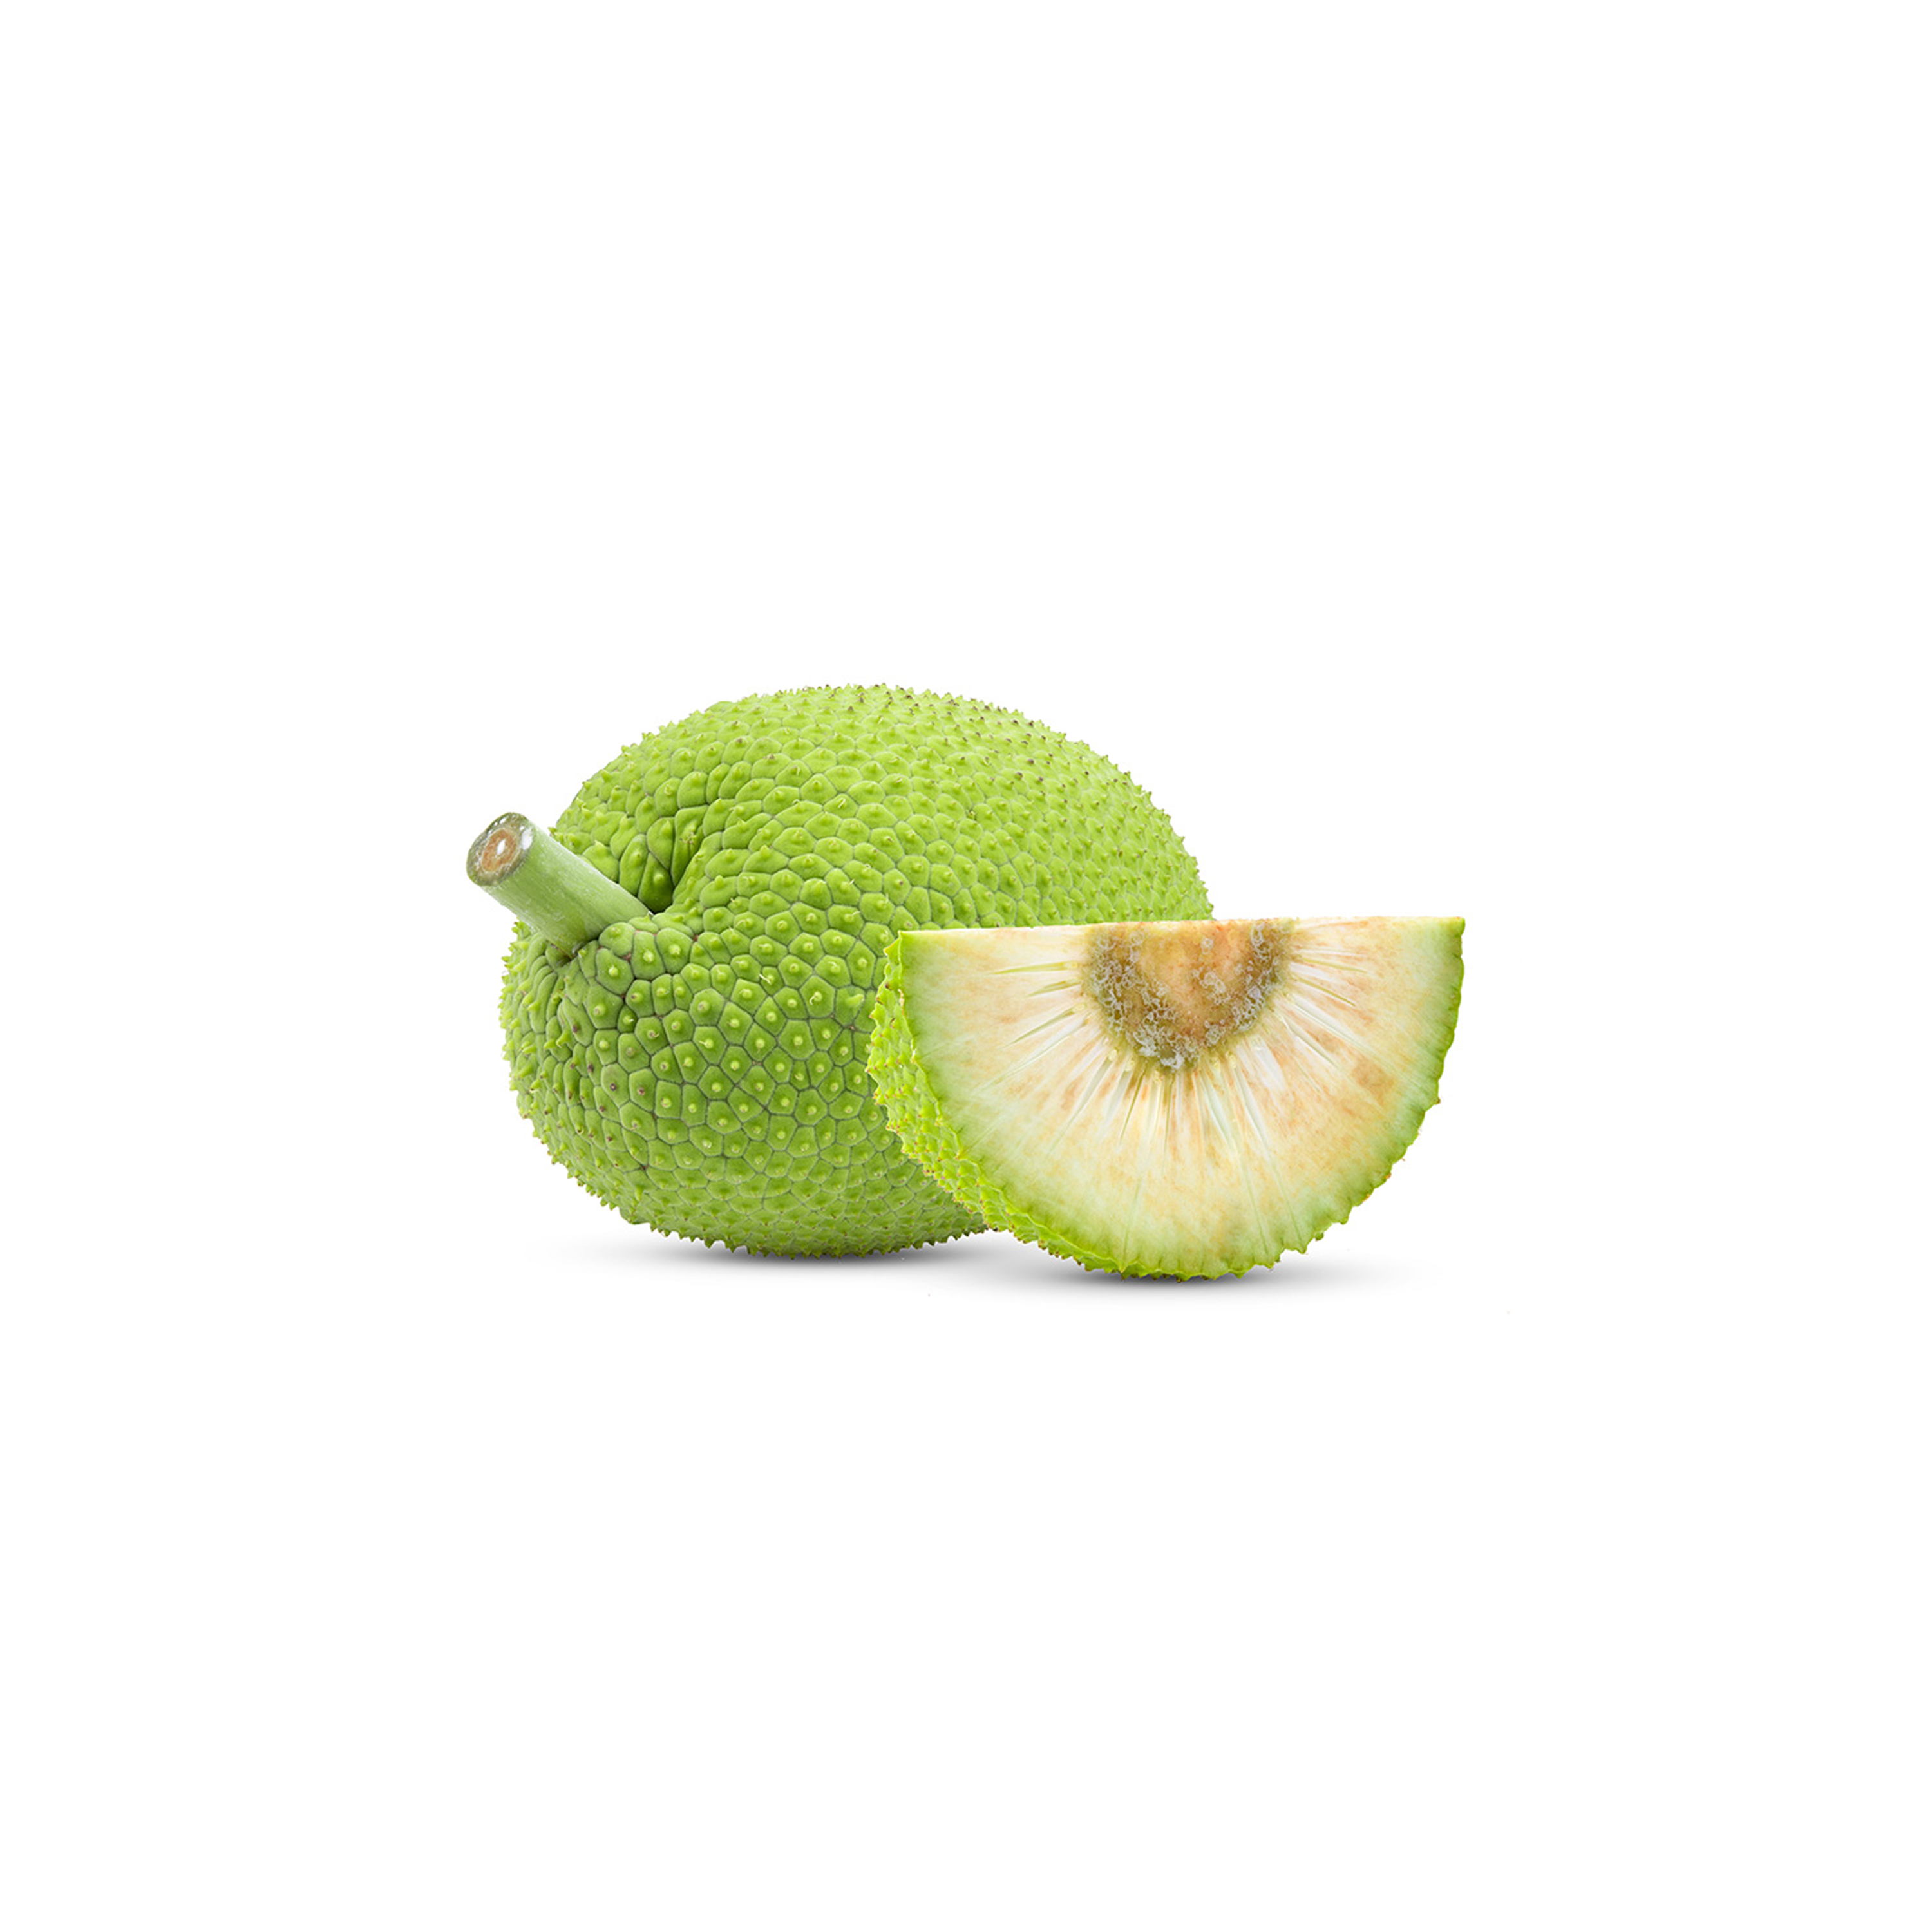 Breadfruit (Approx 3-4lbs Each)